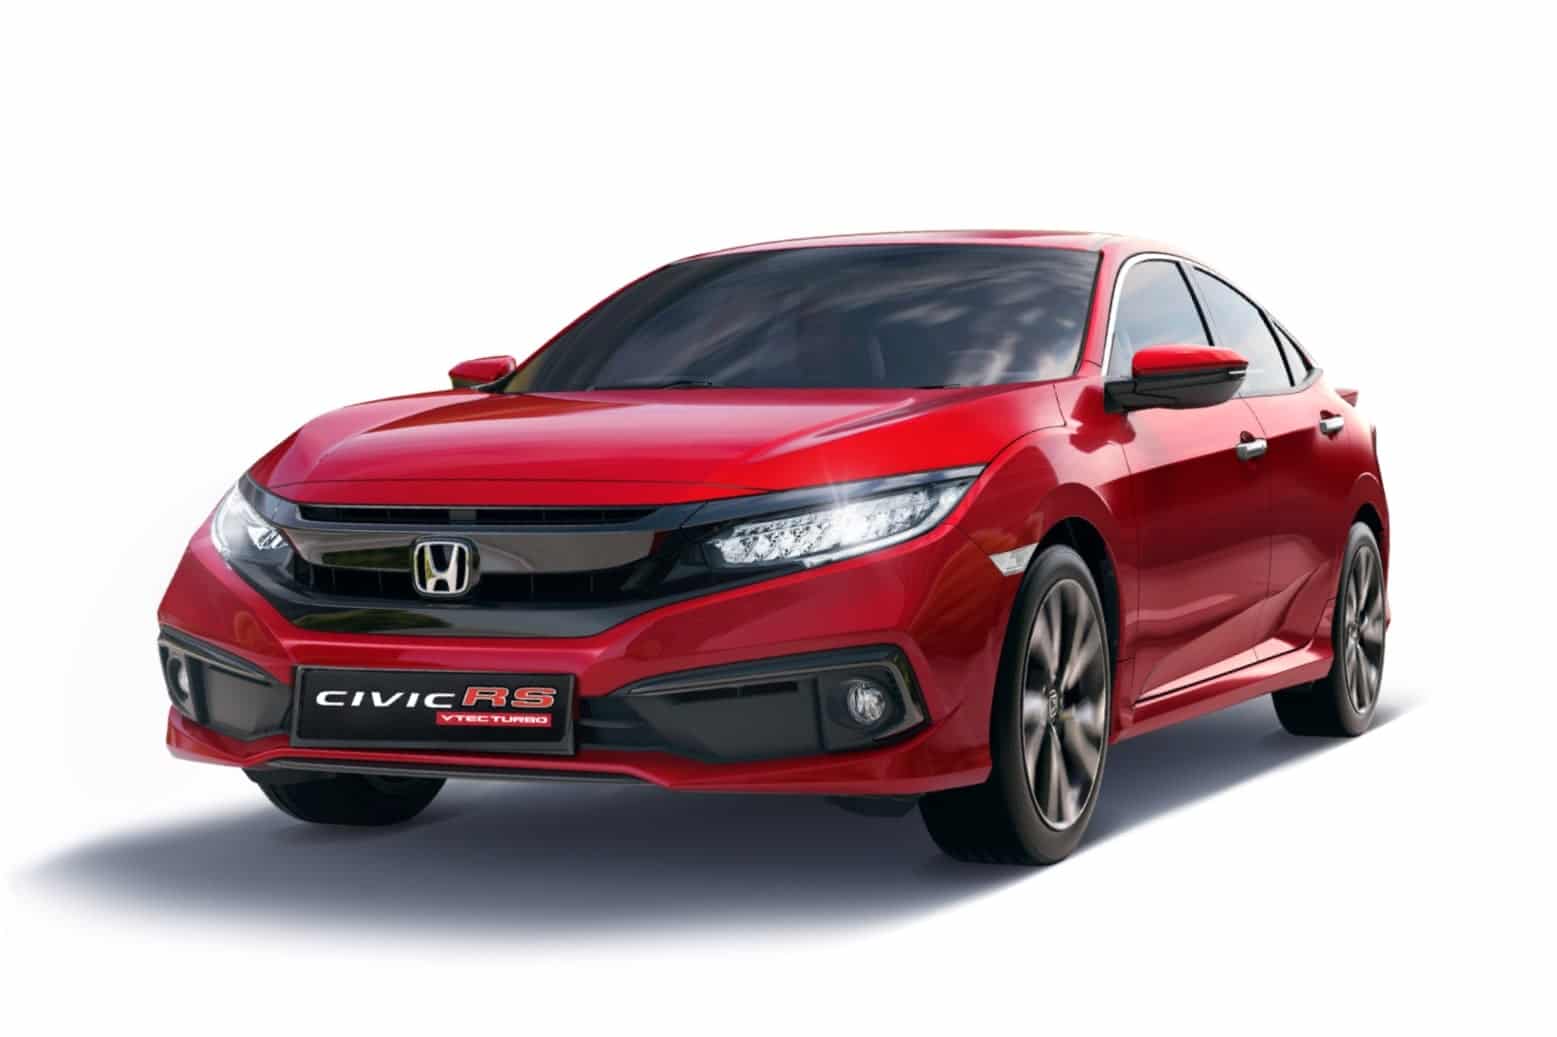 Chi tiết hình ảnh thực tế của Honda Civic RS 2020 màu Đỏ Cherry mới